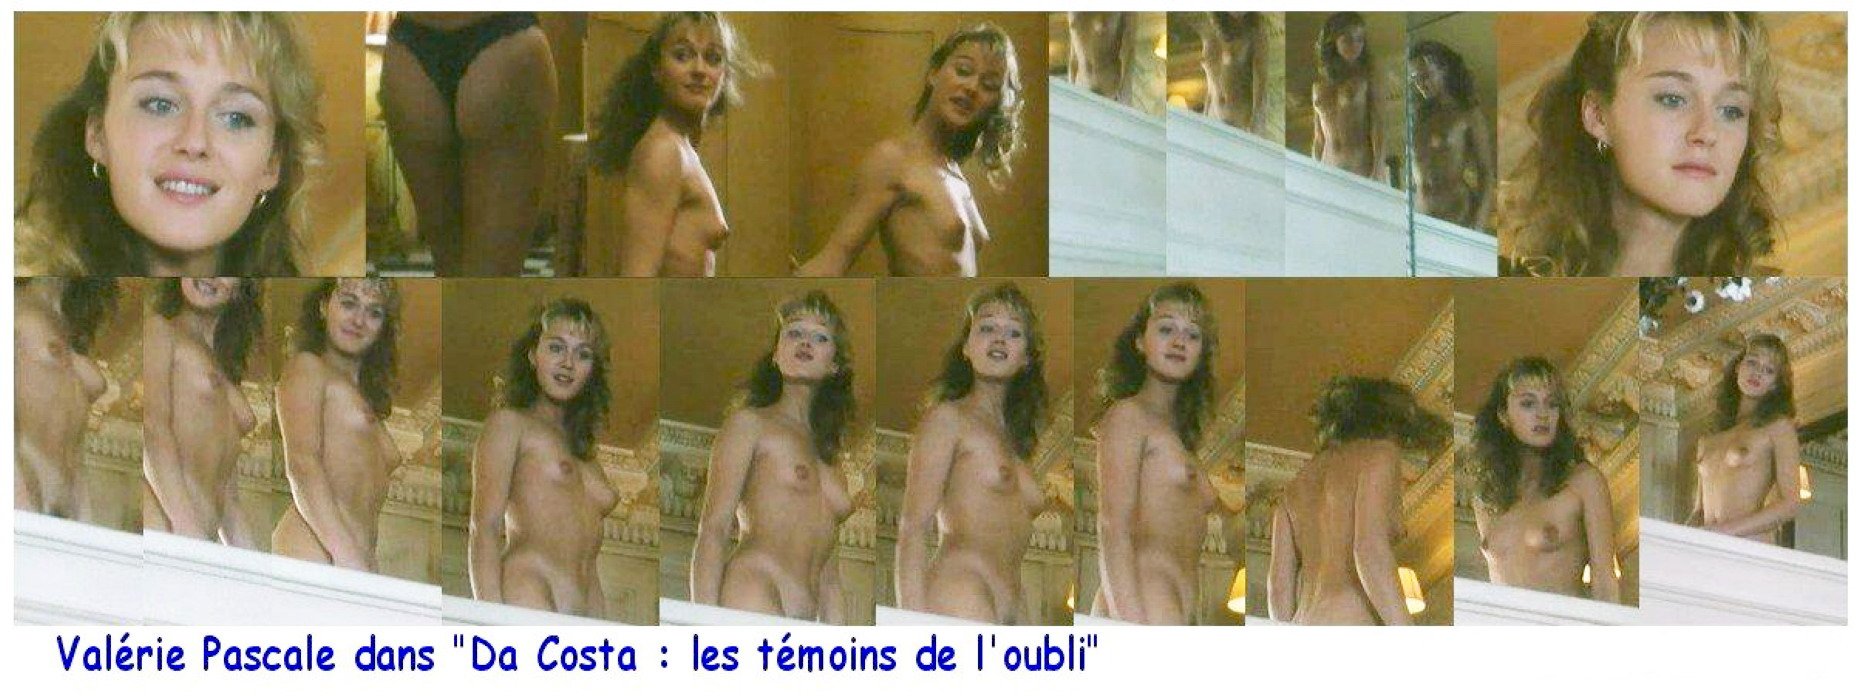 Valérie Pascal nude pics.